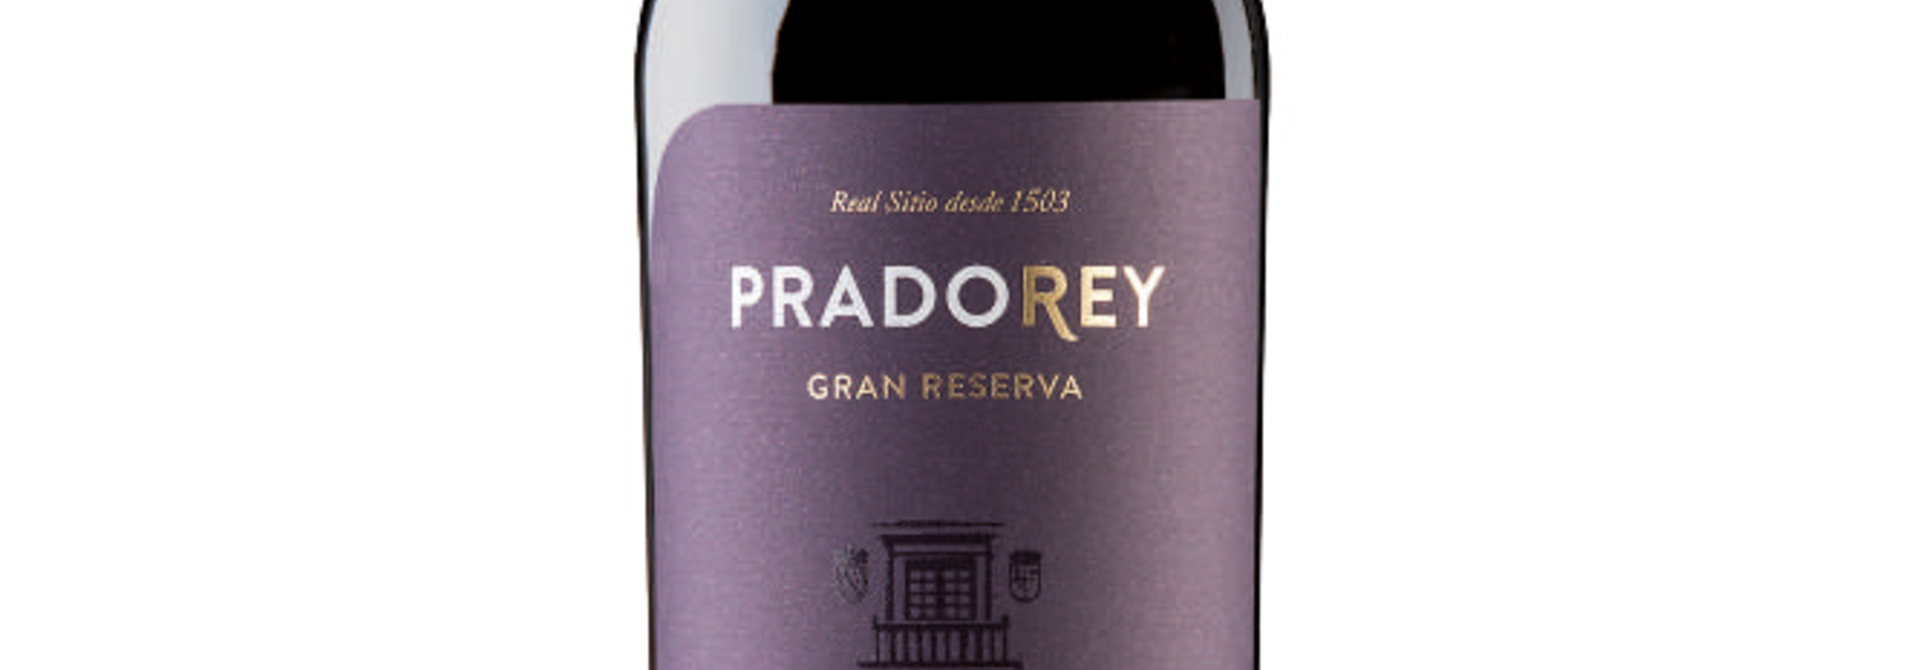 Pradorey Gran Reserva